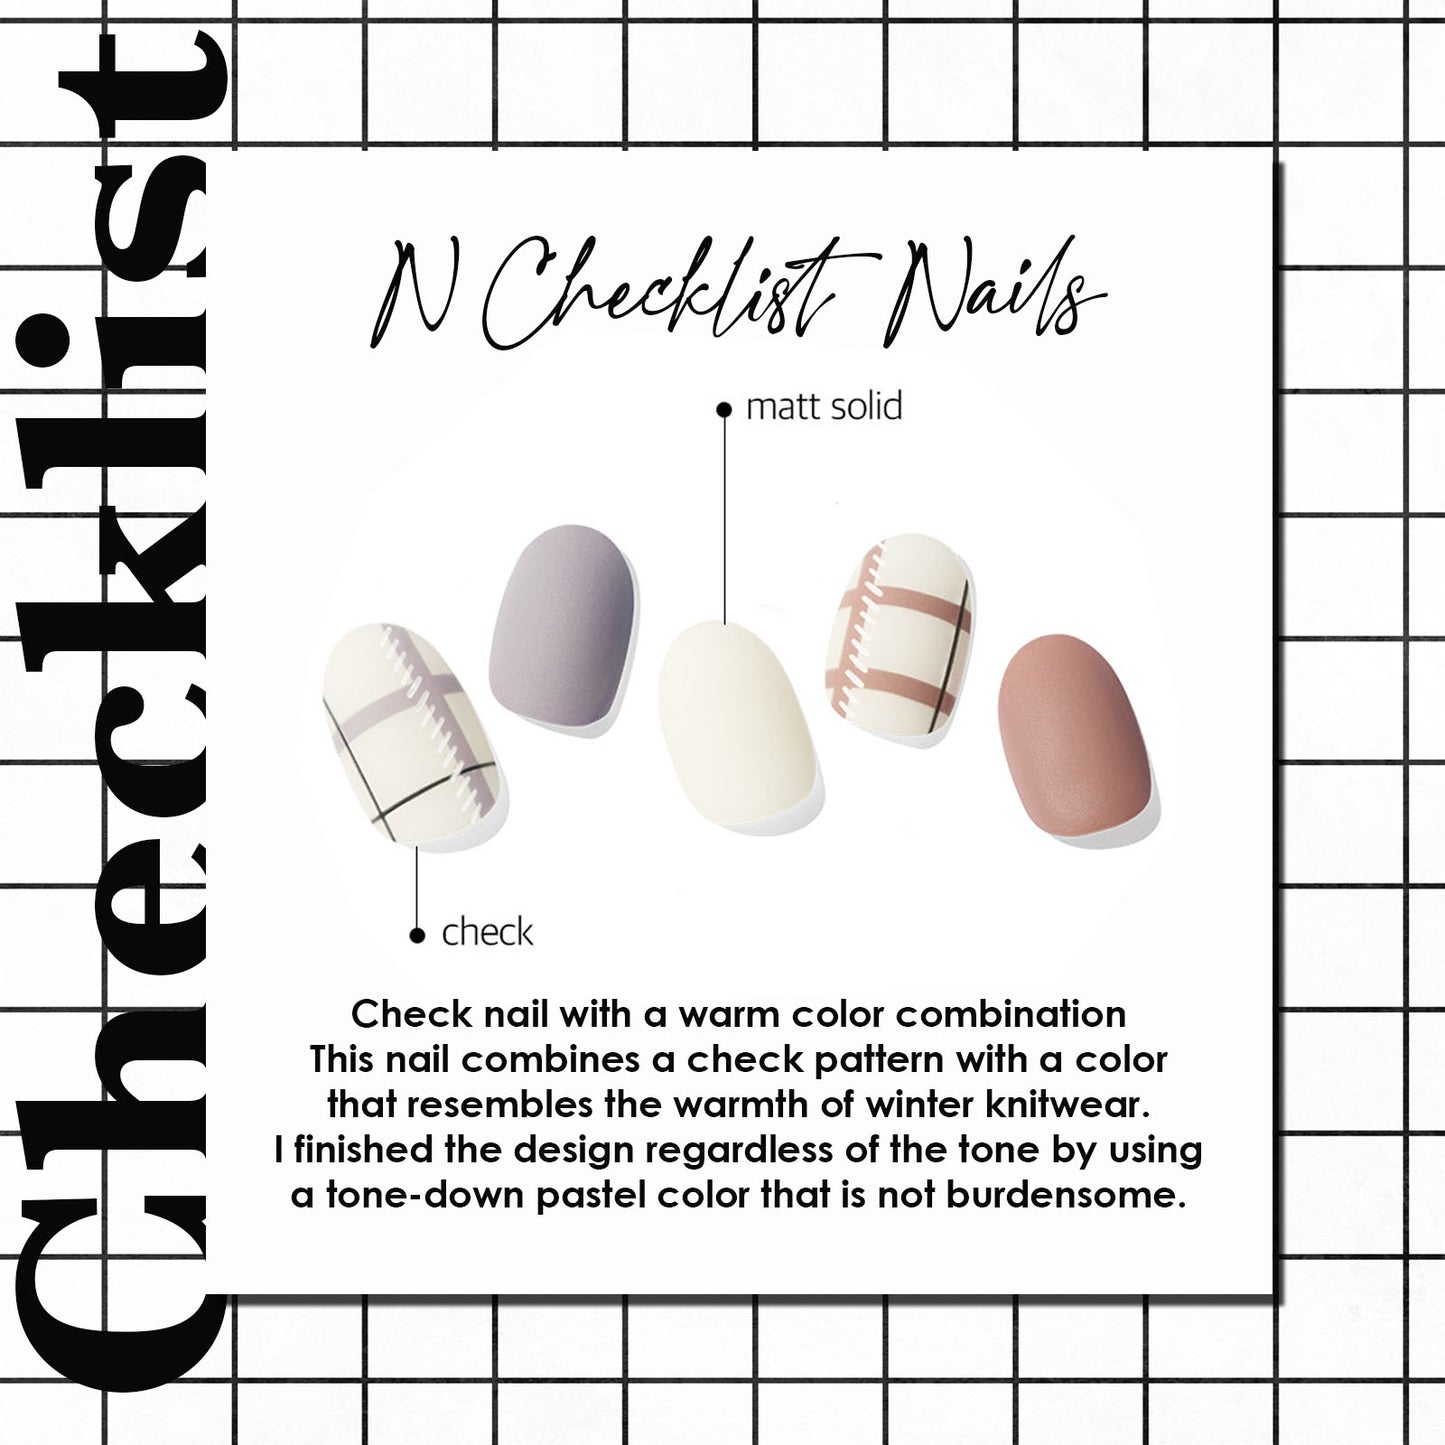 Ohora (N Checklist Nails)